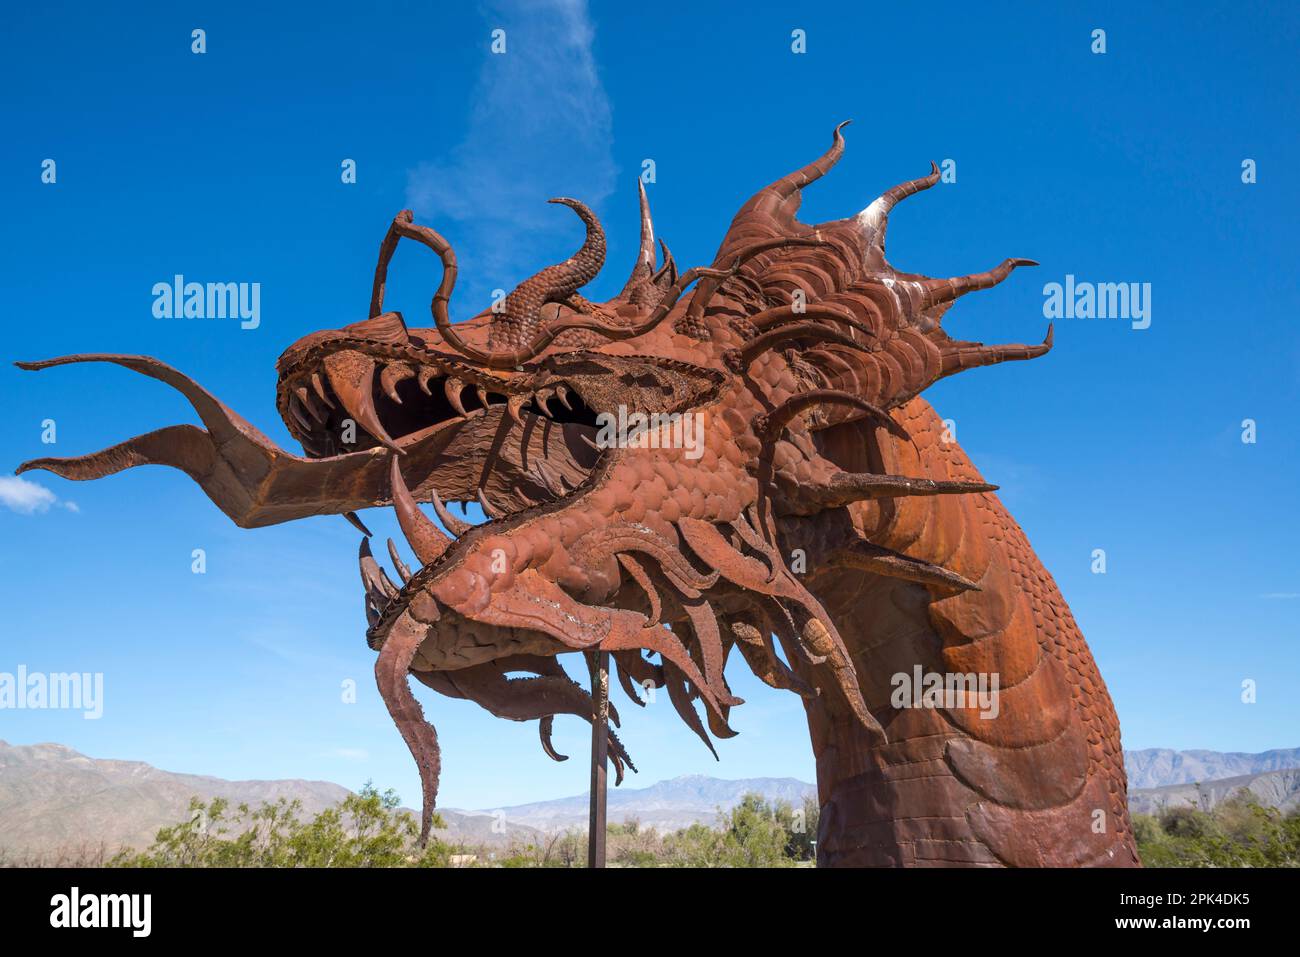 Sculptures in Anza Borrego State Park. Sculptures are by Ricardo Breceda. Borrego Springs, California. This is the Borrego Springs Dragon or serpent. Stock Photo